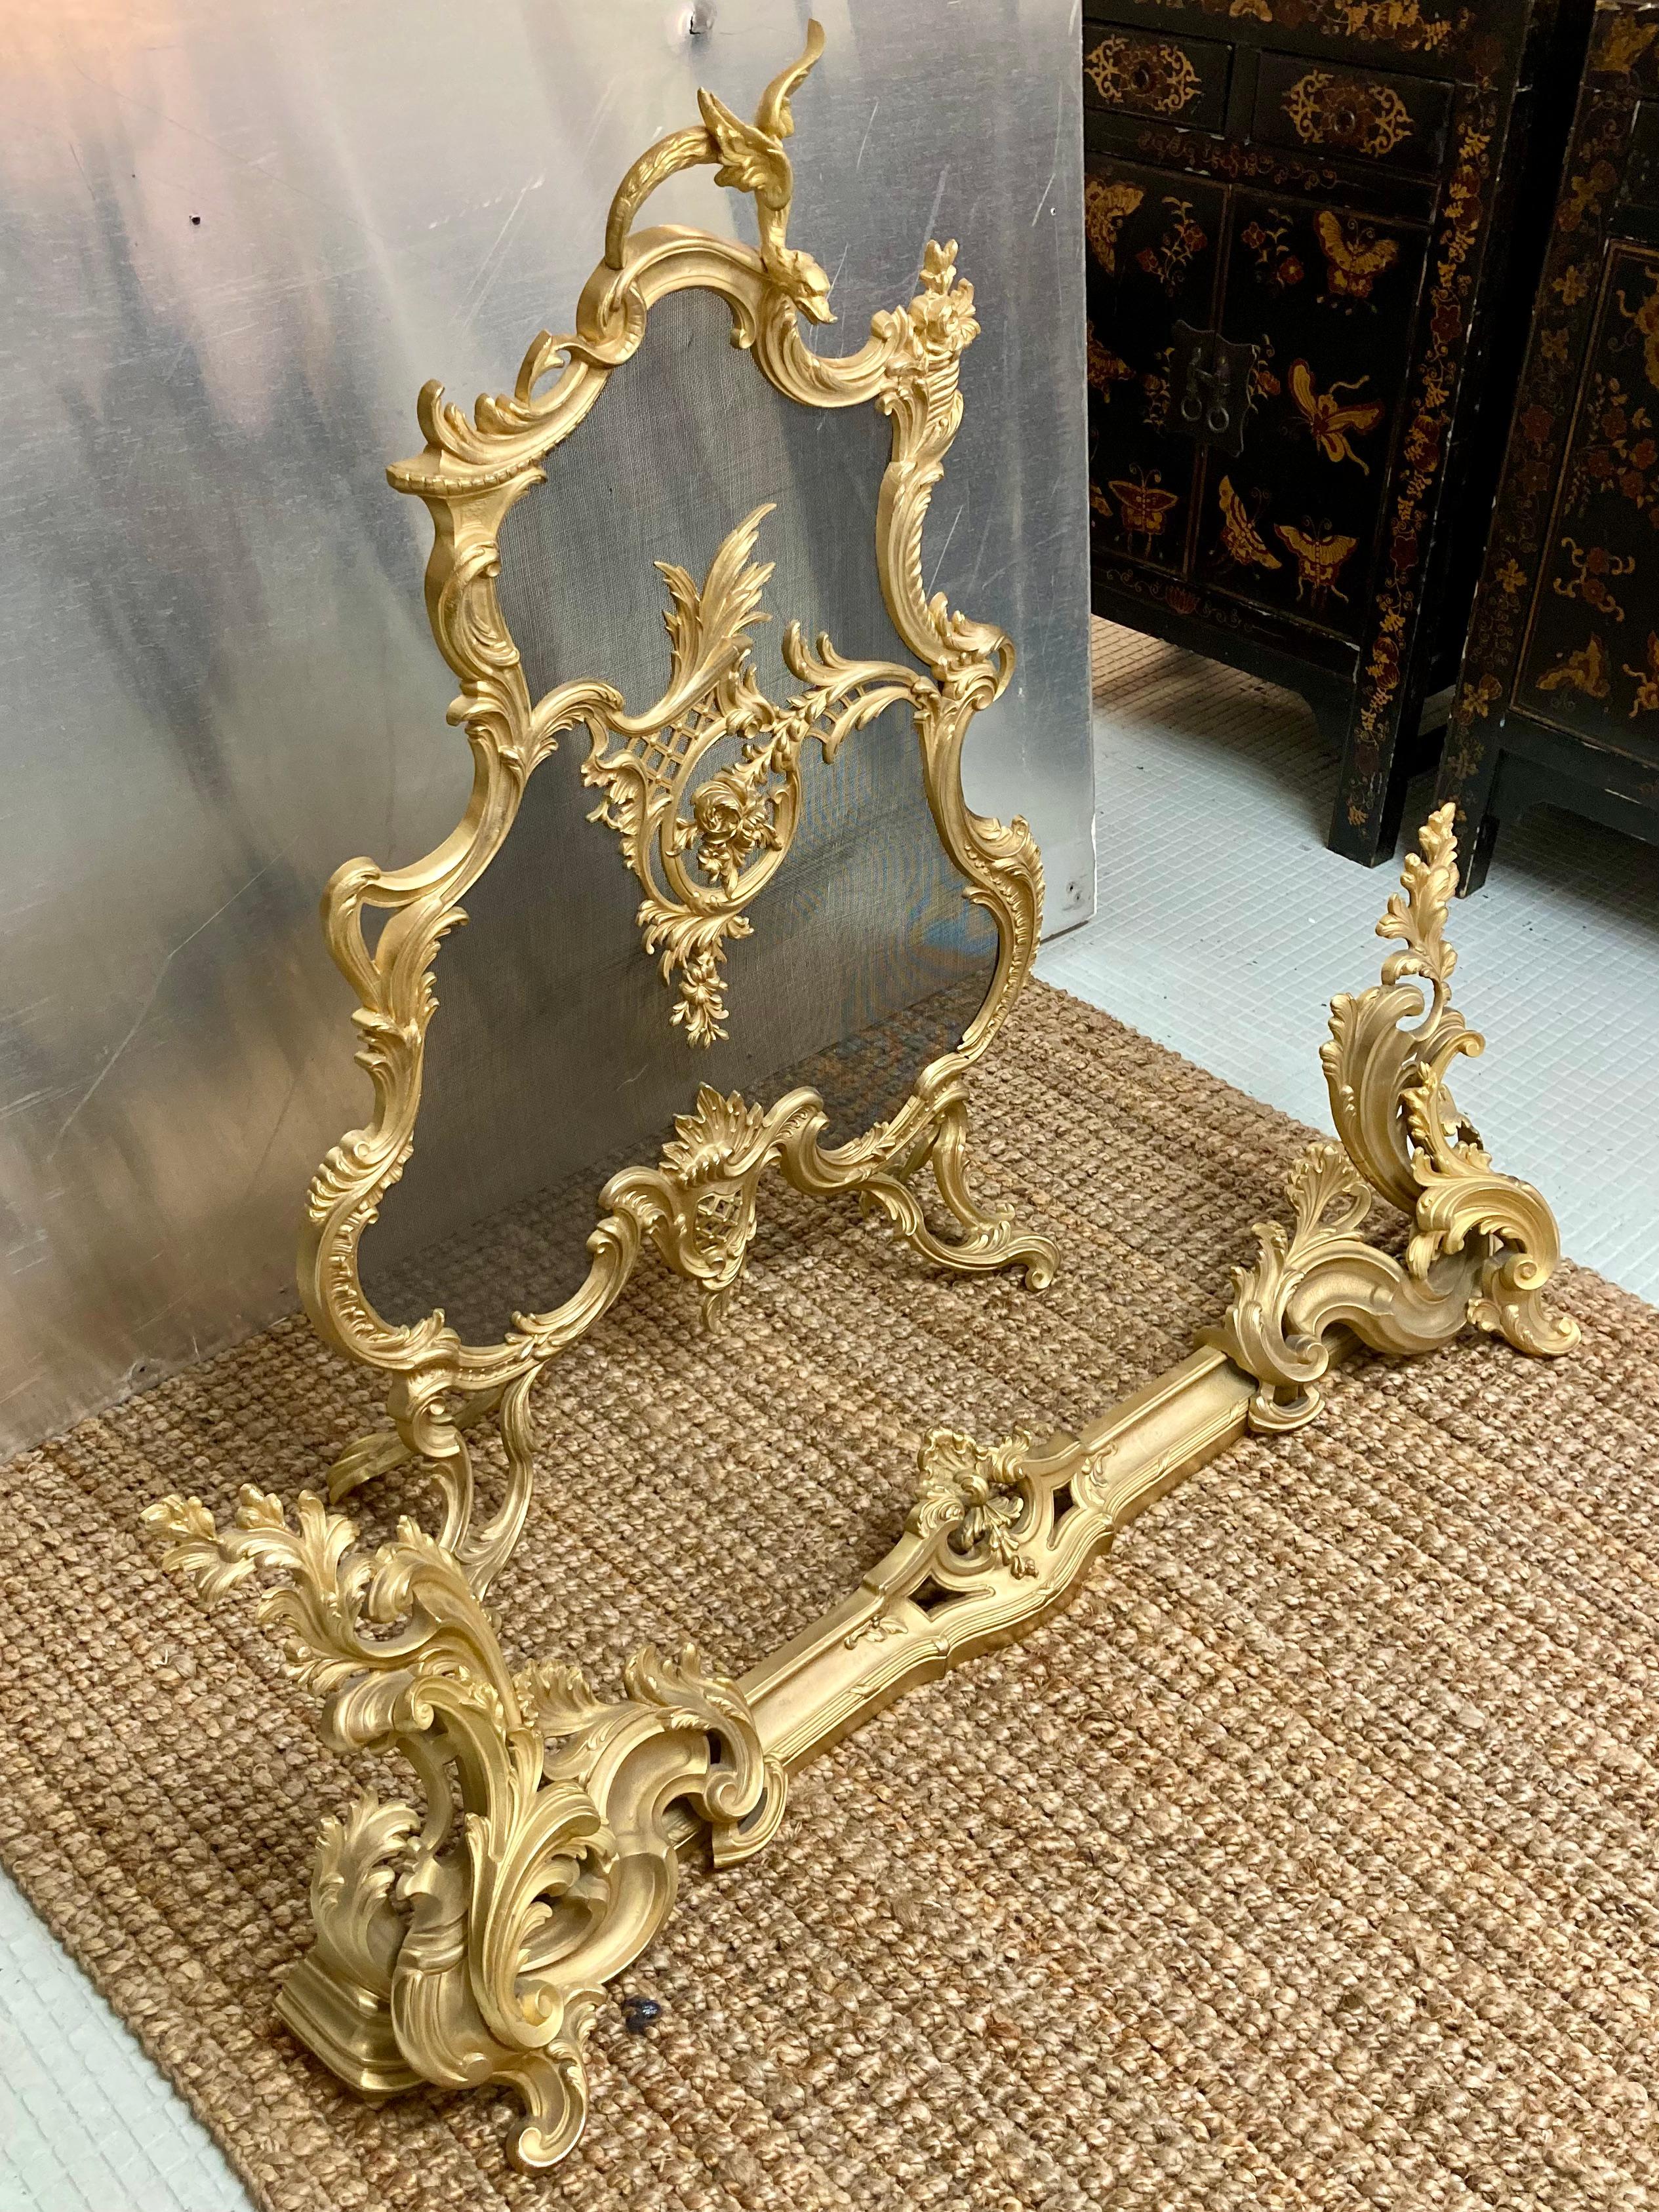 Schöne 2-teilige Französisch 19. Jh. Louis XV vergoldete Bronze Kaminschirm und Fender Set. Erstaunlicher Bronzeguss mit vergoldeter Oberfläche. Sehr hell und sauber vergoldet. Sehr exquisites Set. Bringen Sie etwas französischen Stil in Ihr Zuhause.